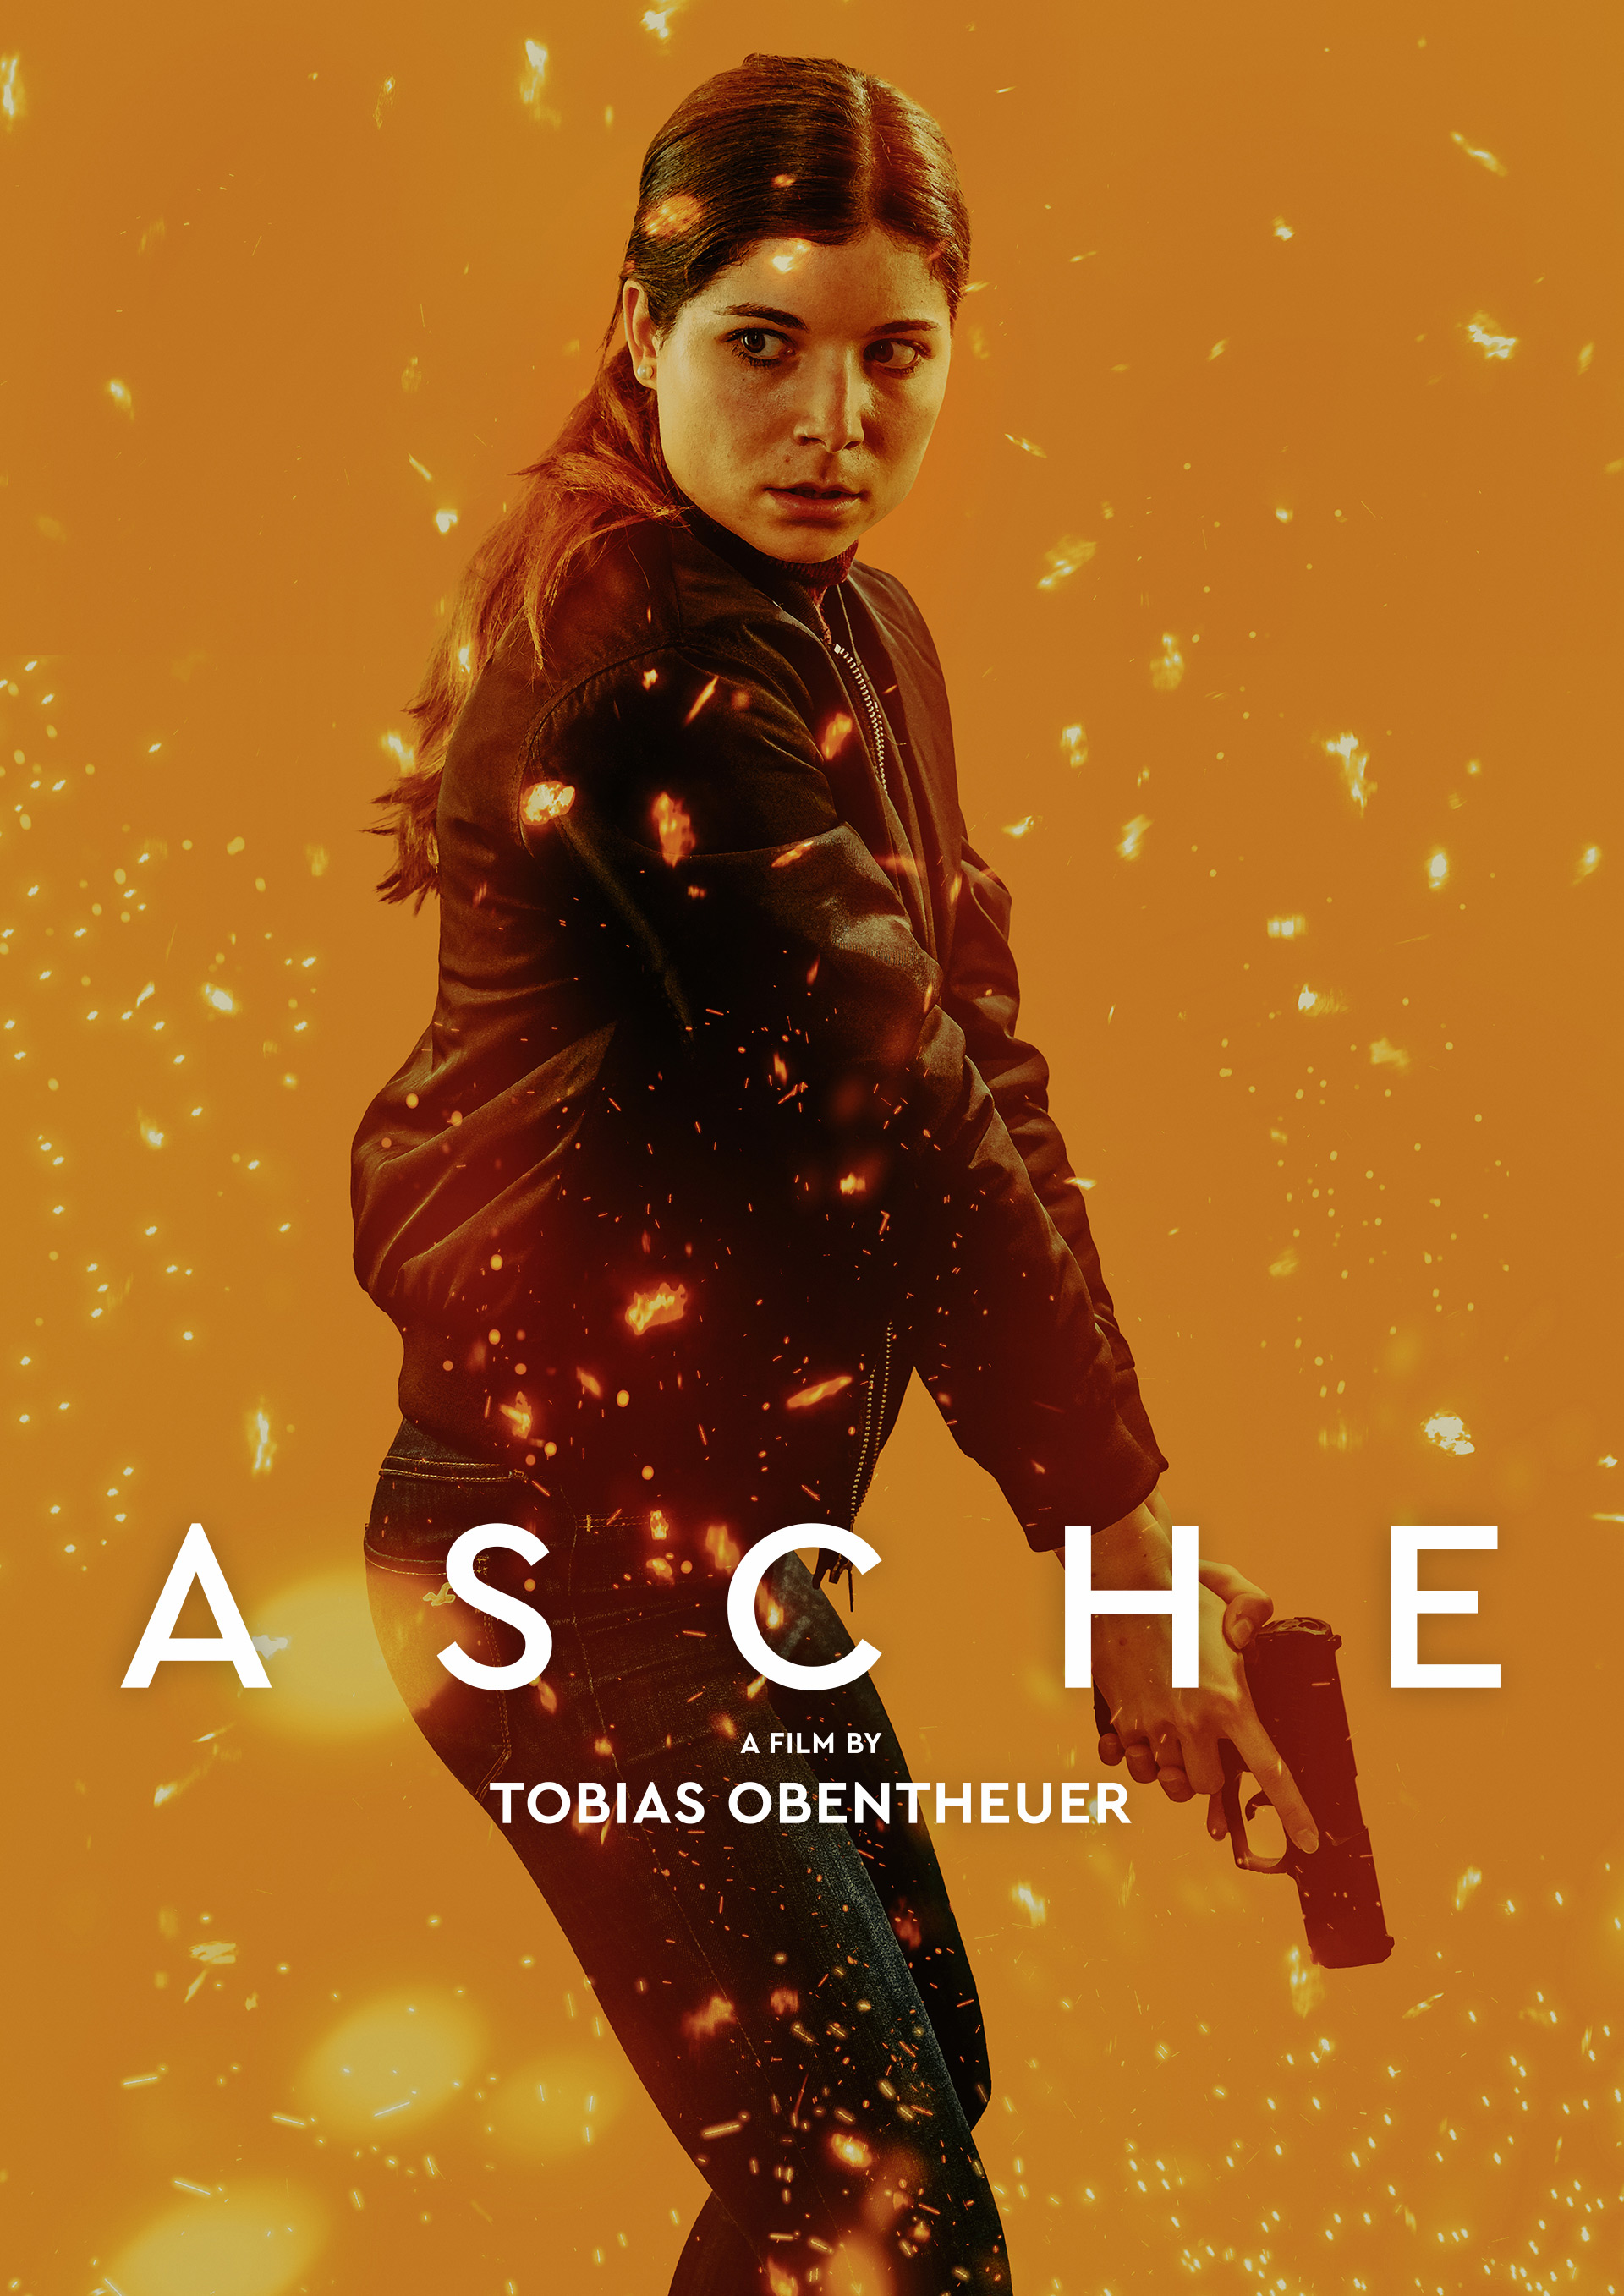 artfatale-asx-asche-film-character-poster-artwork-5b